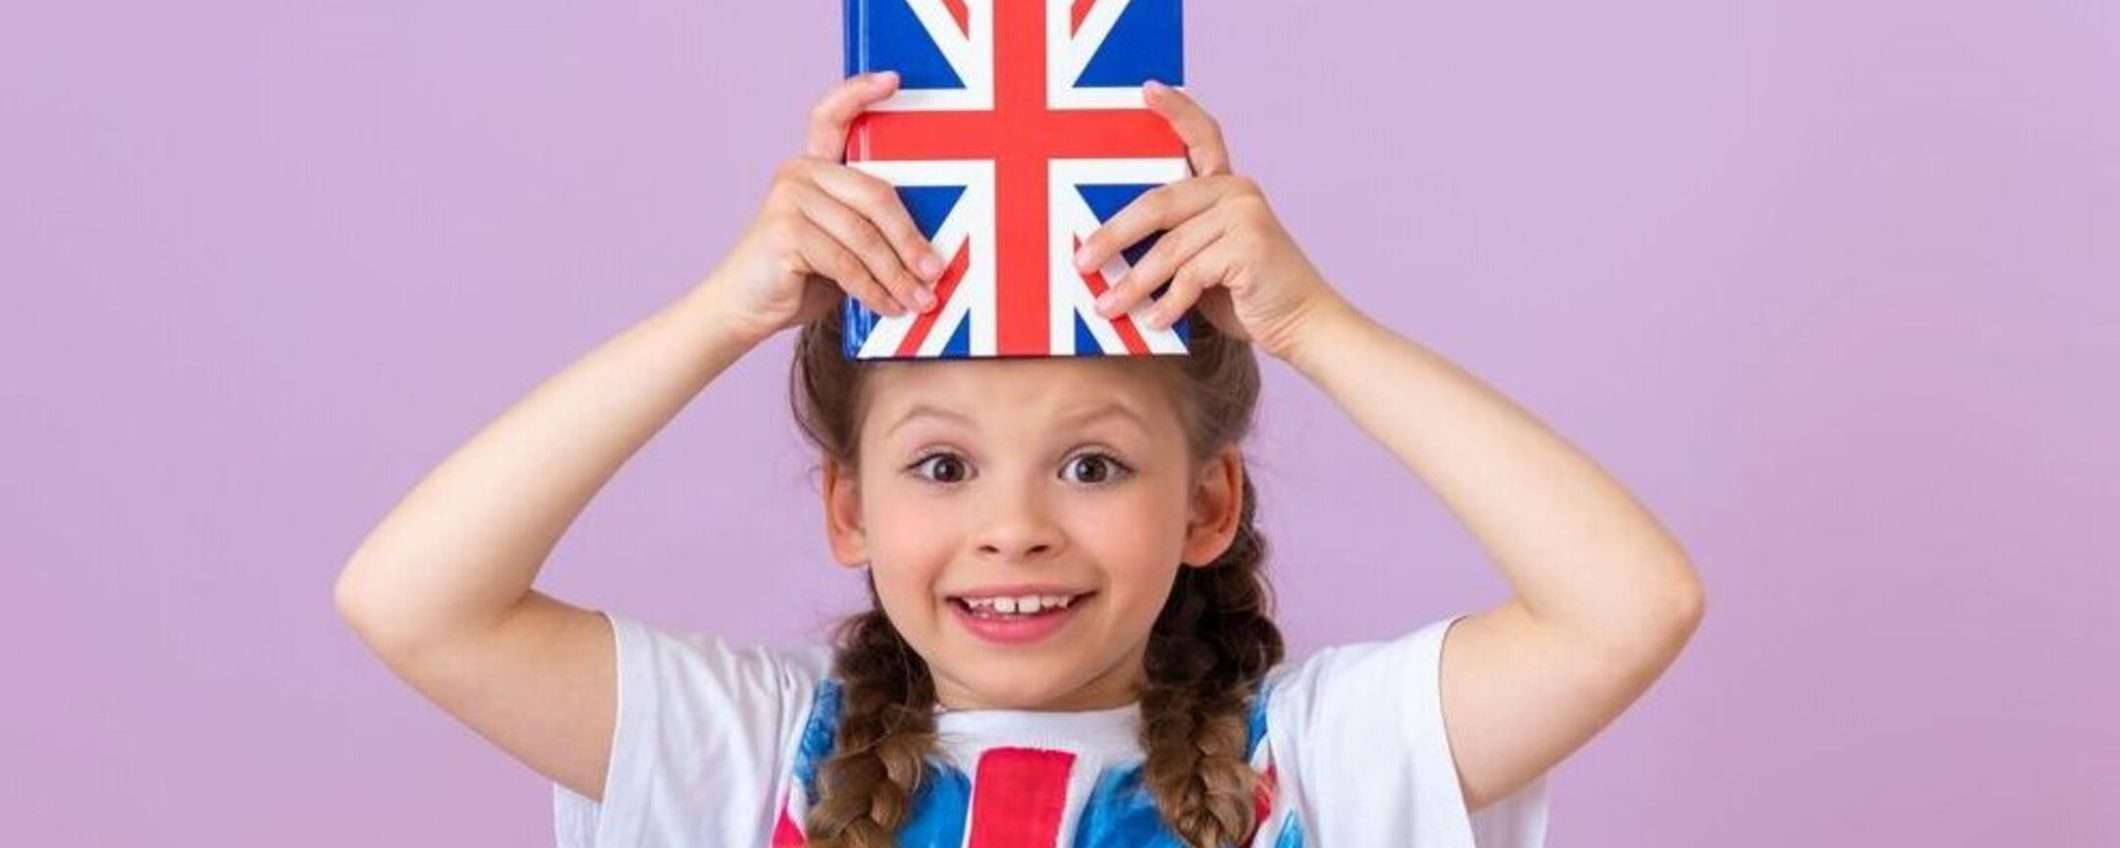 Inizia a imparare l'inglese online con Novakid: prova gratuita per bambini fino a 12 anni